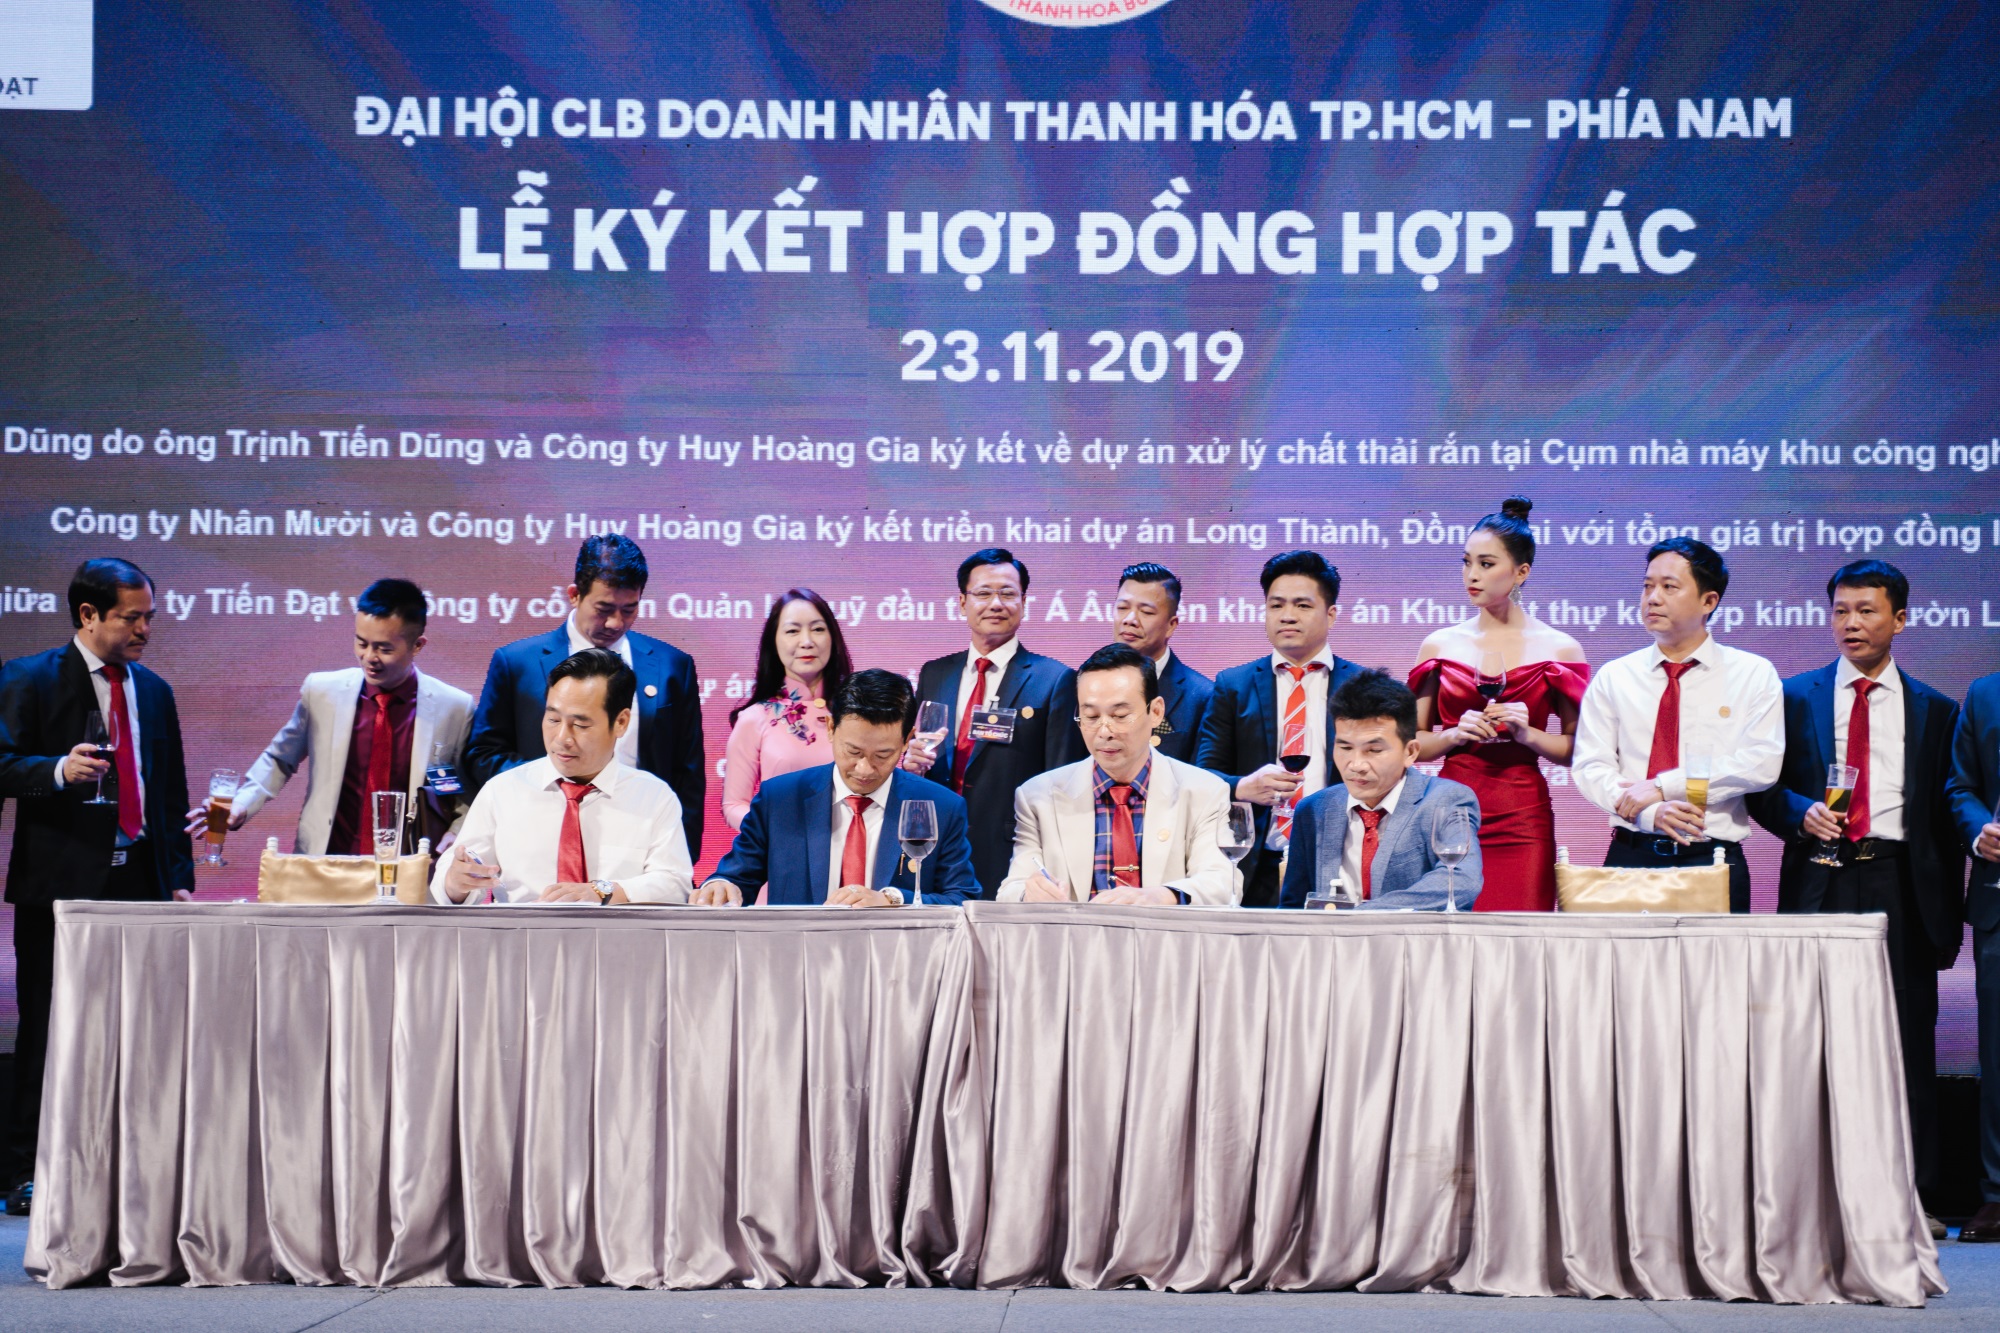 Câu lạc bộ Doanh nhân Thanh Hoá tại TP.HCM kỷ niệm 10 năm thành lập và ra mắt Ban chấp hành mới - Ảnh 7